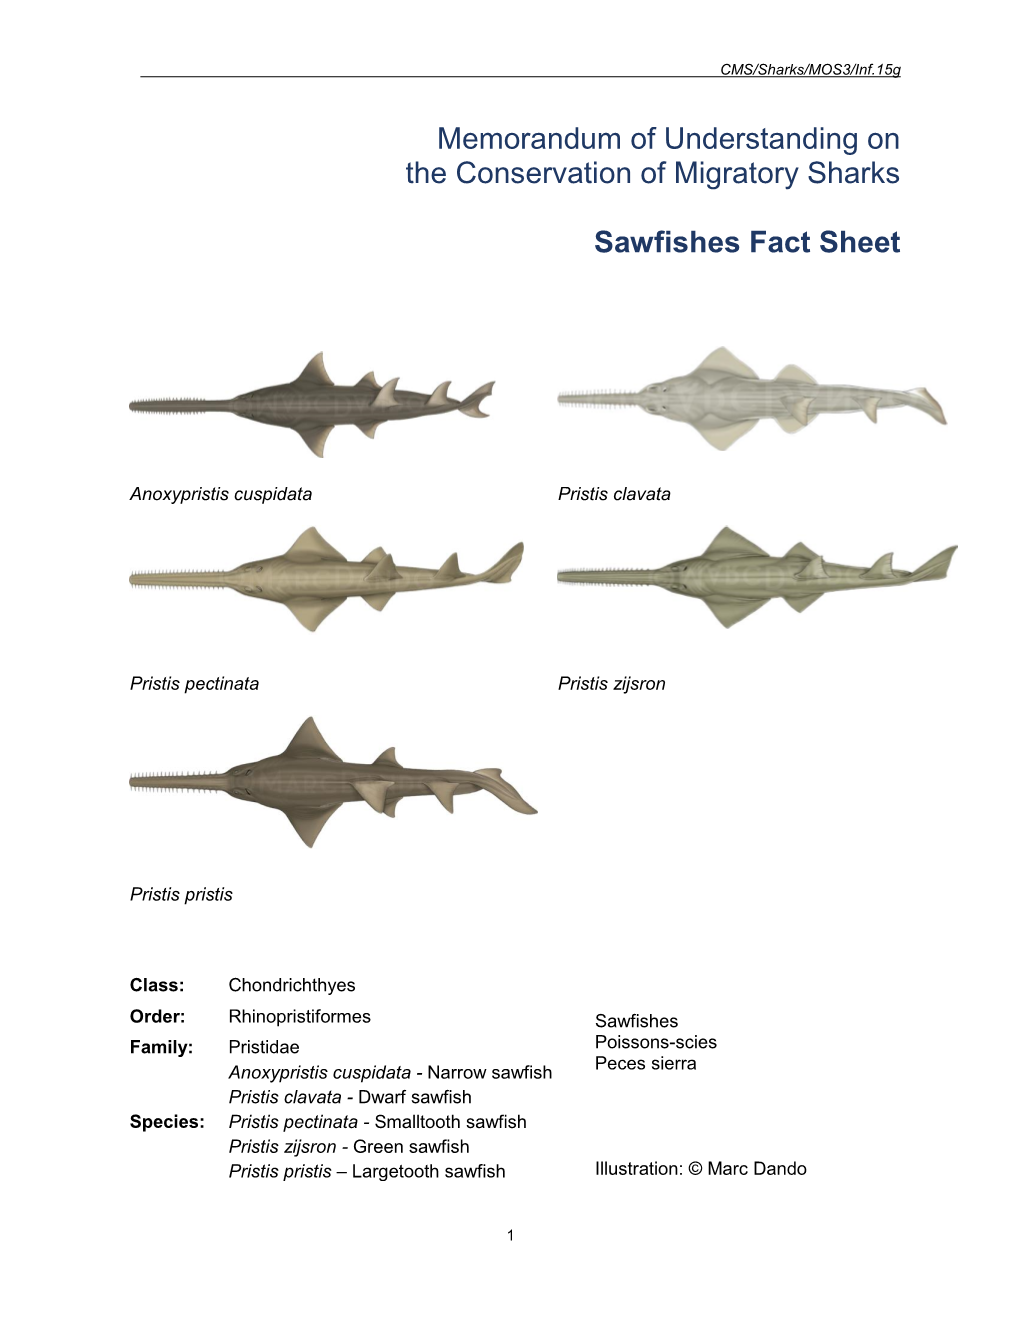 Sawfishes Fact Sheet